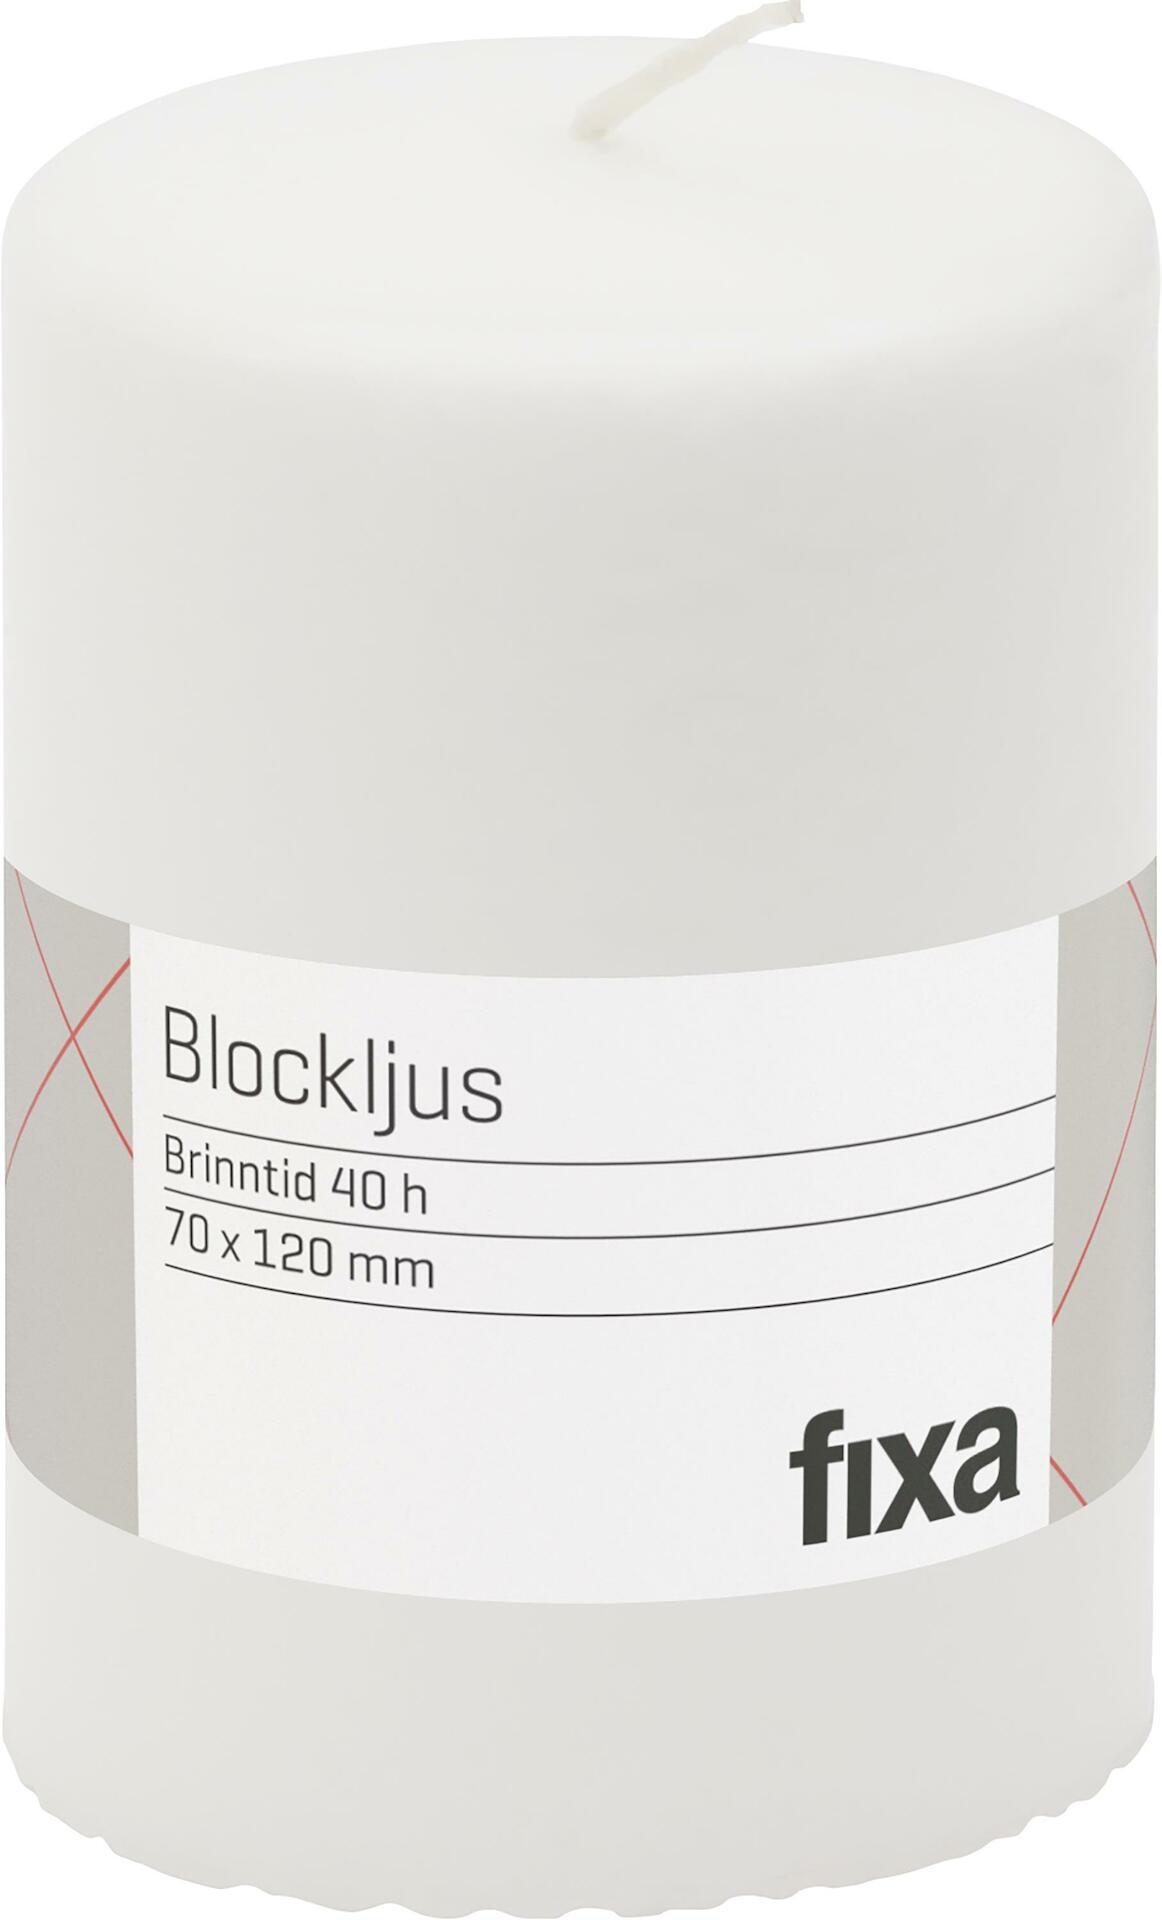 FIXA BLOCKLJUS 7X12CM VIT